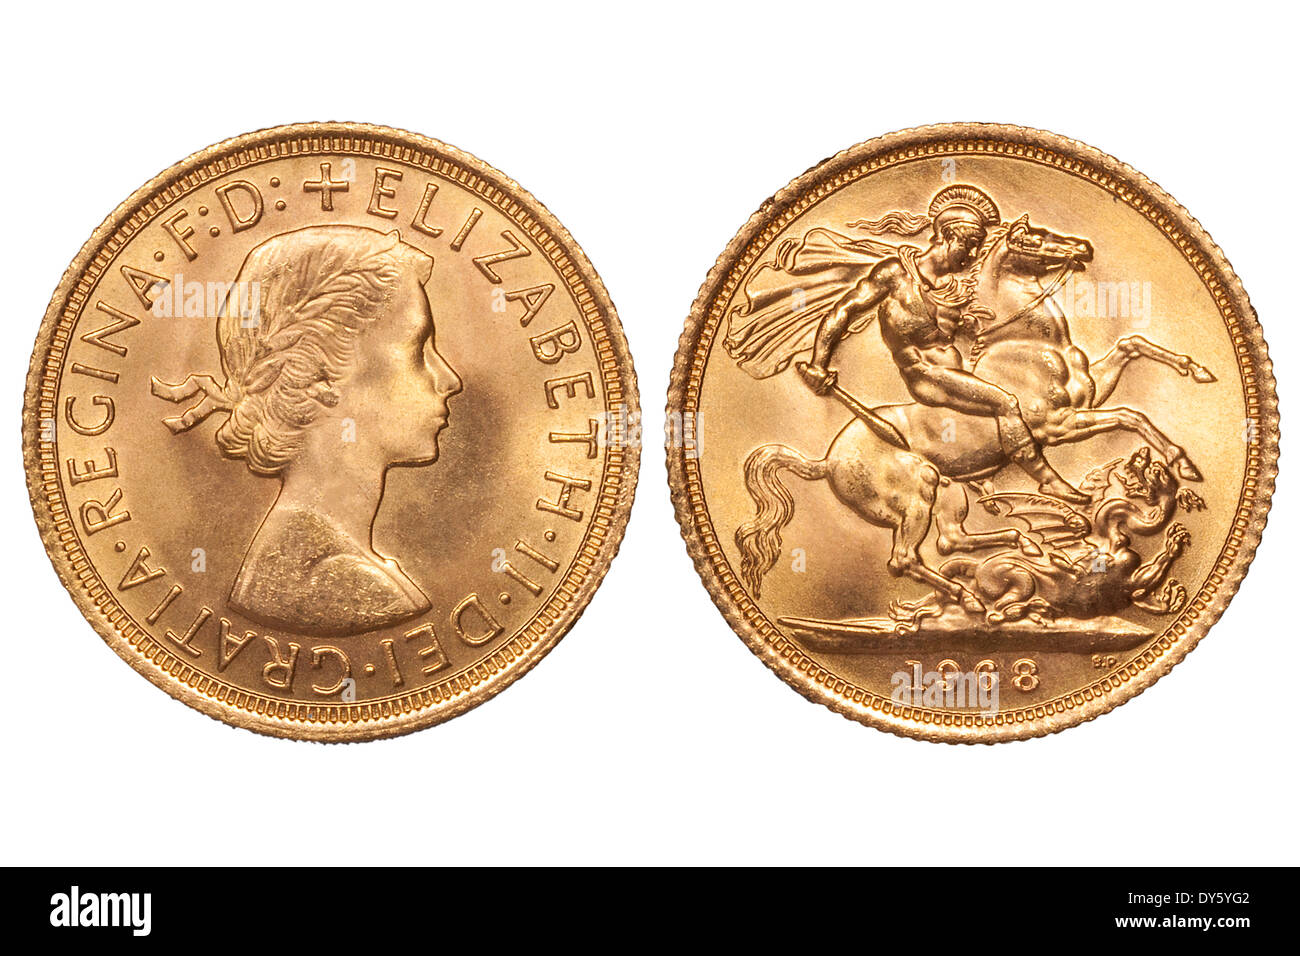 Sovereign Goldmünze des Vereinigten Königreichs mit Königin Elizabeth II.  und Hl. Georg tötet den Drachen datiert 1968. JMH6121 Stockfotografie -  Alamy